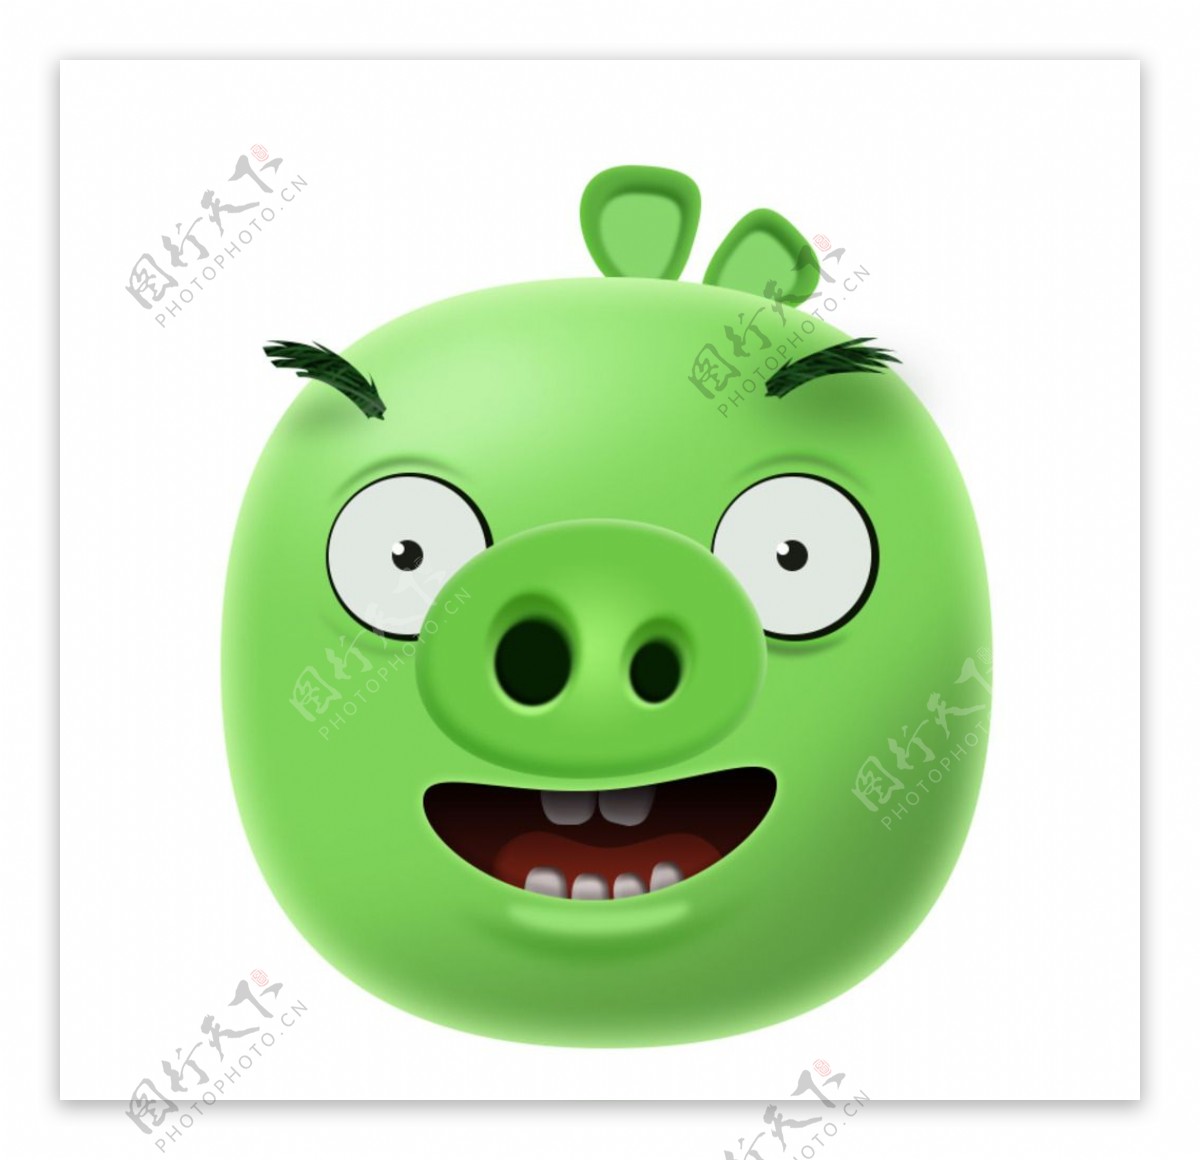 绿皮猪